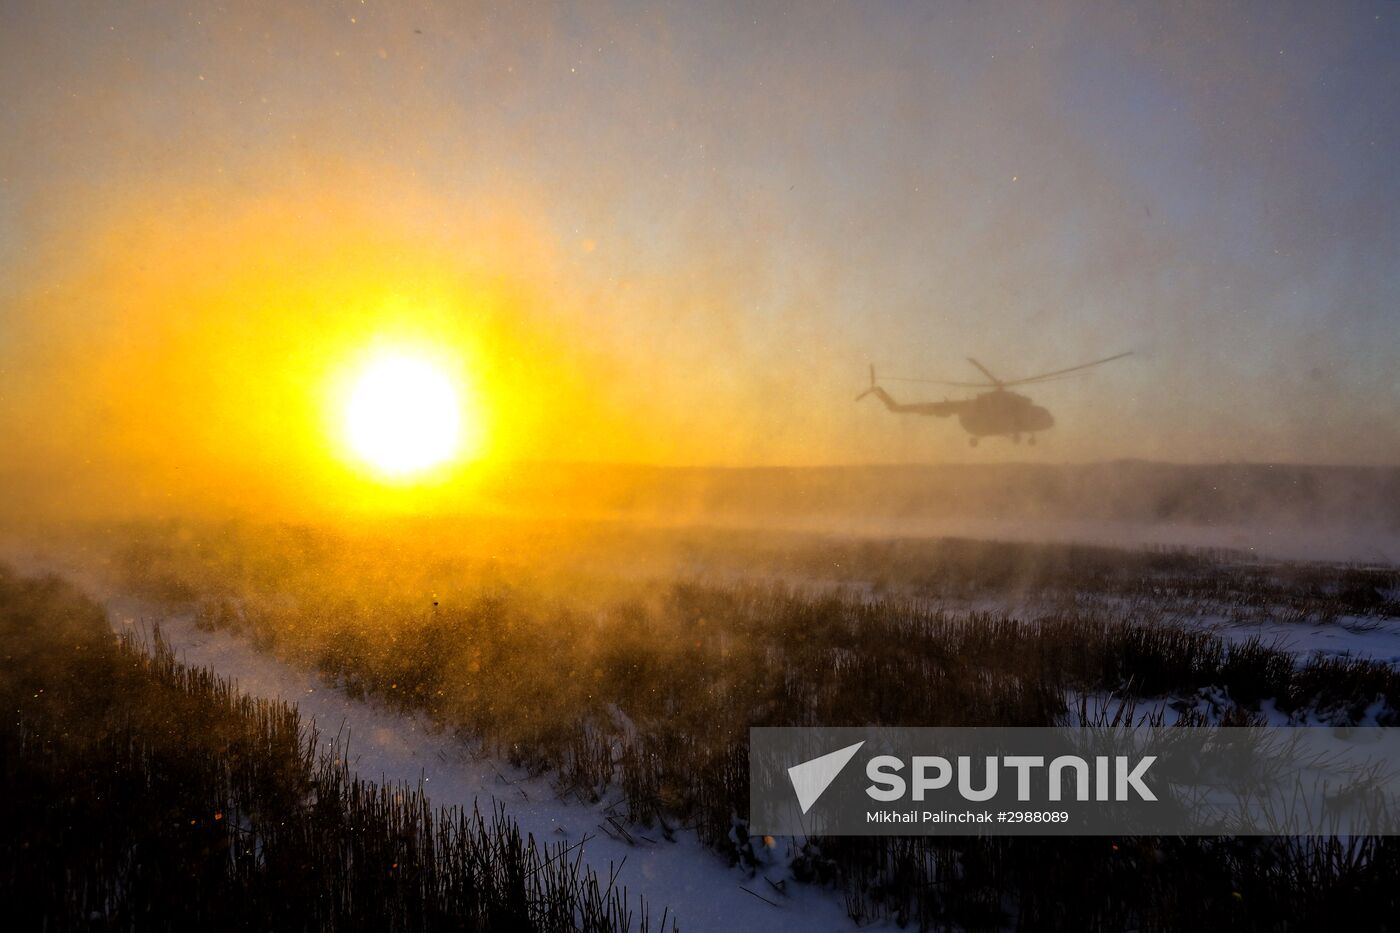 Ukrainian President Petro Poroshenko inspects strongpoint near Horlivka